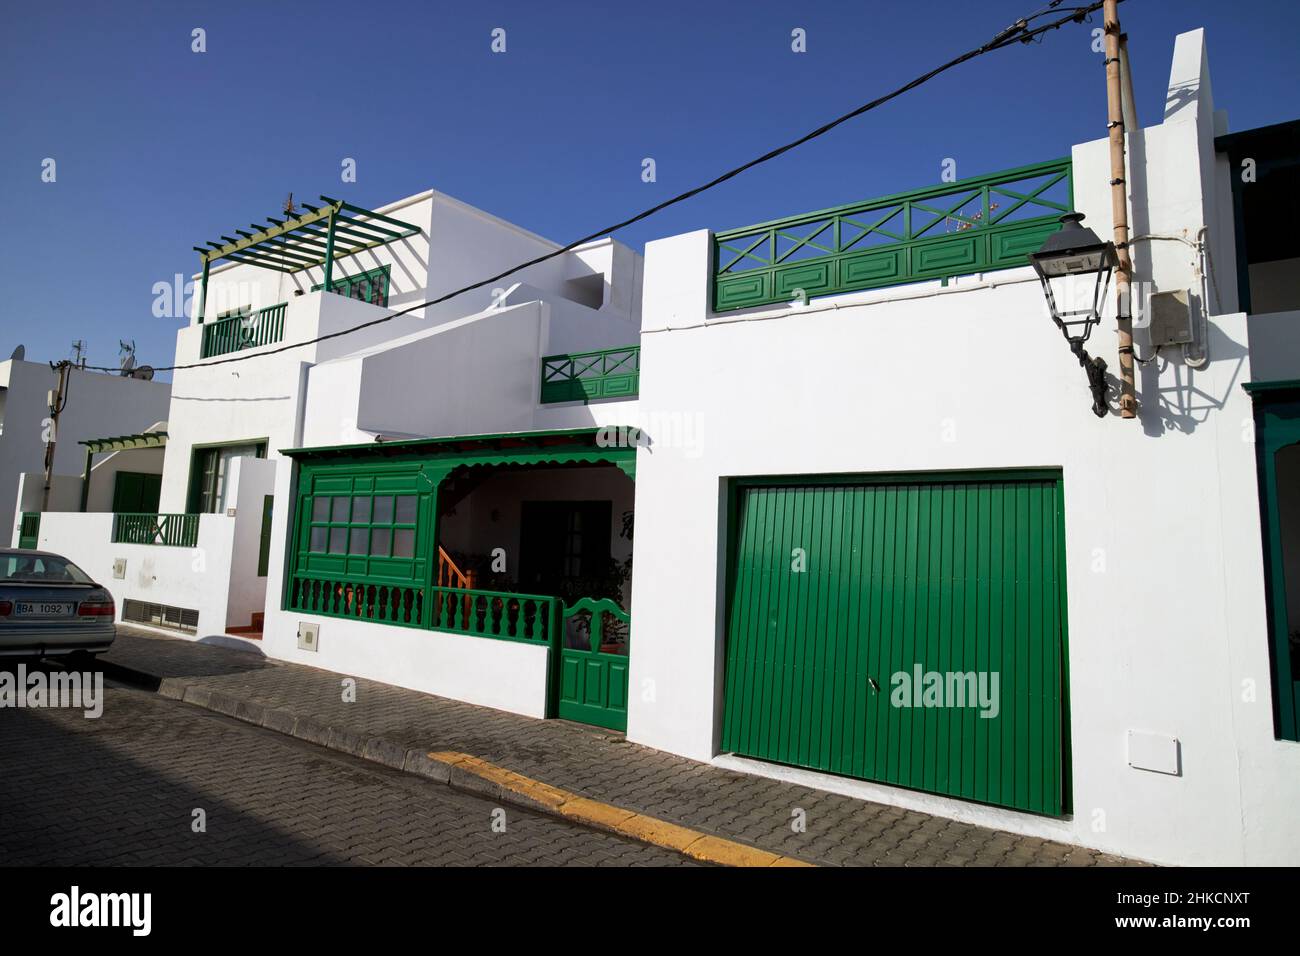 Appartements et maisons traditionnels blanchis à la chaux et décorés de détails peints en vert dans la vieille ville de playa blanca Lanzarote, en Espagne, aux îles Canaries Banque D'Images